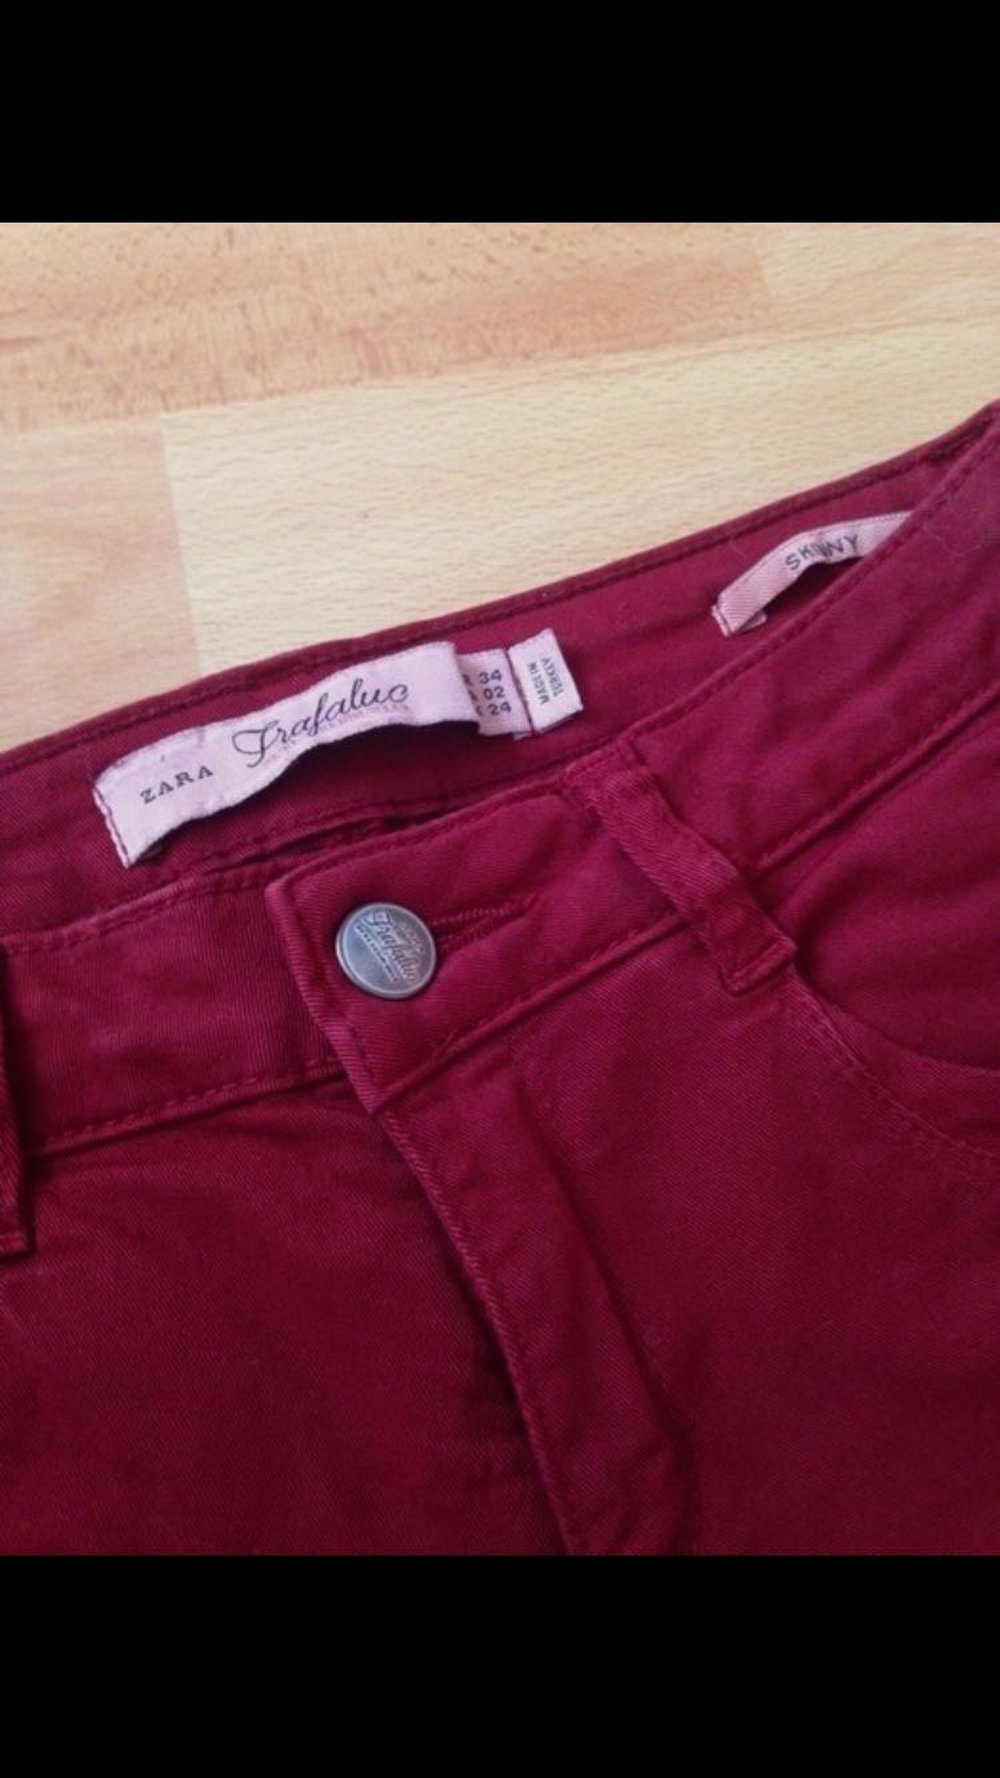 Rote Skinny Jeans von Zara trf